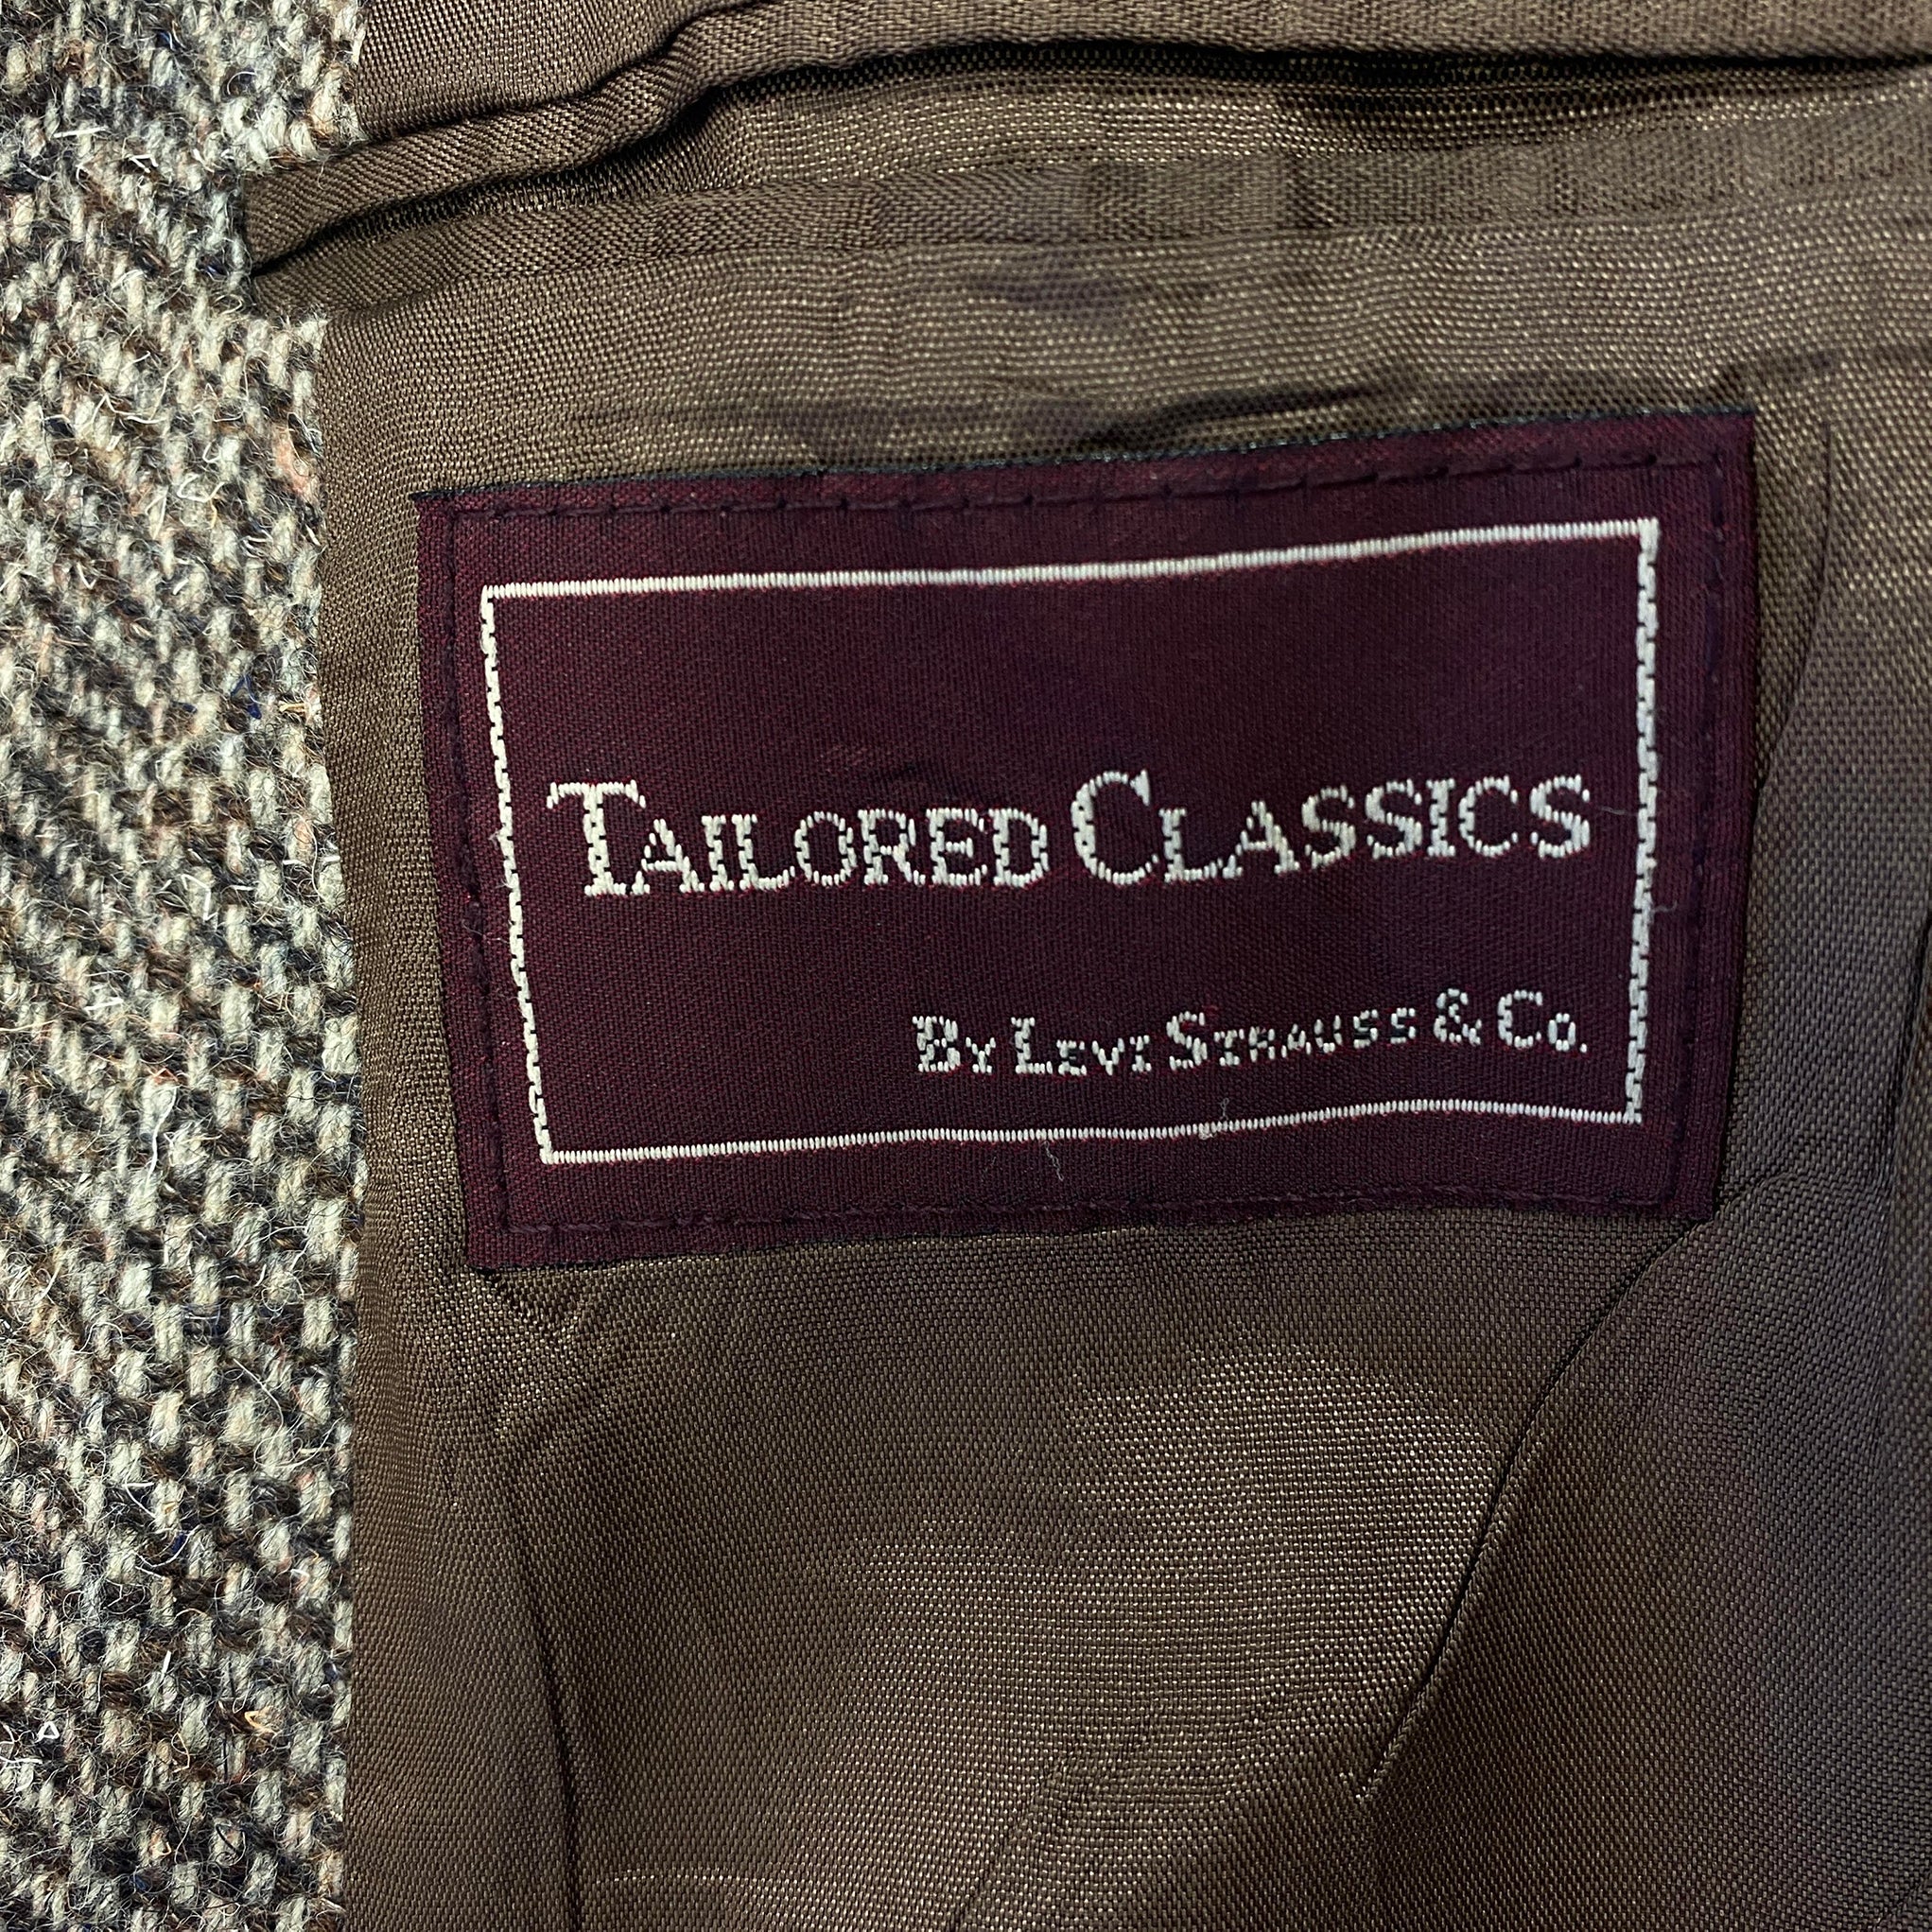 Levi Strauss & Co. Brown Vintage Blazer